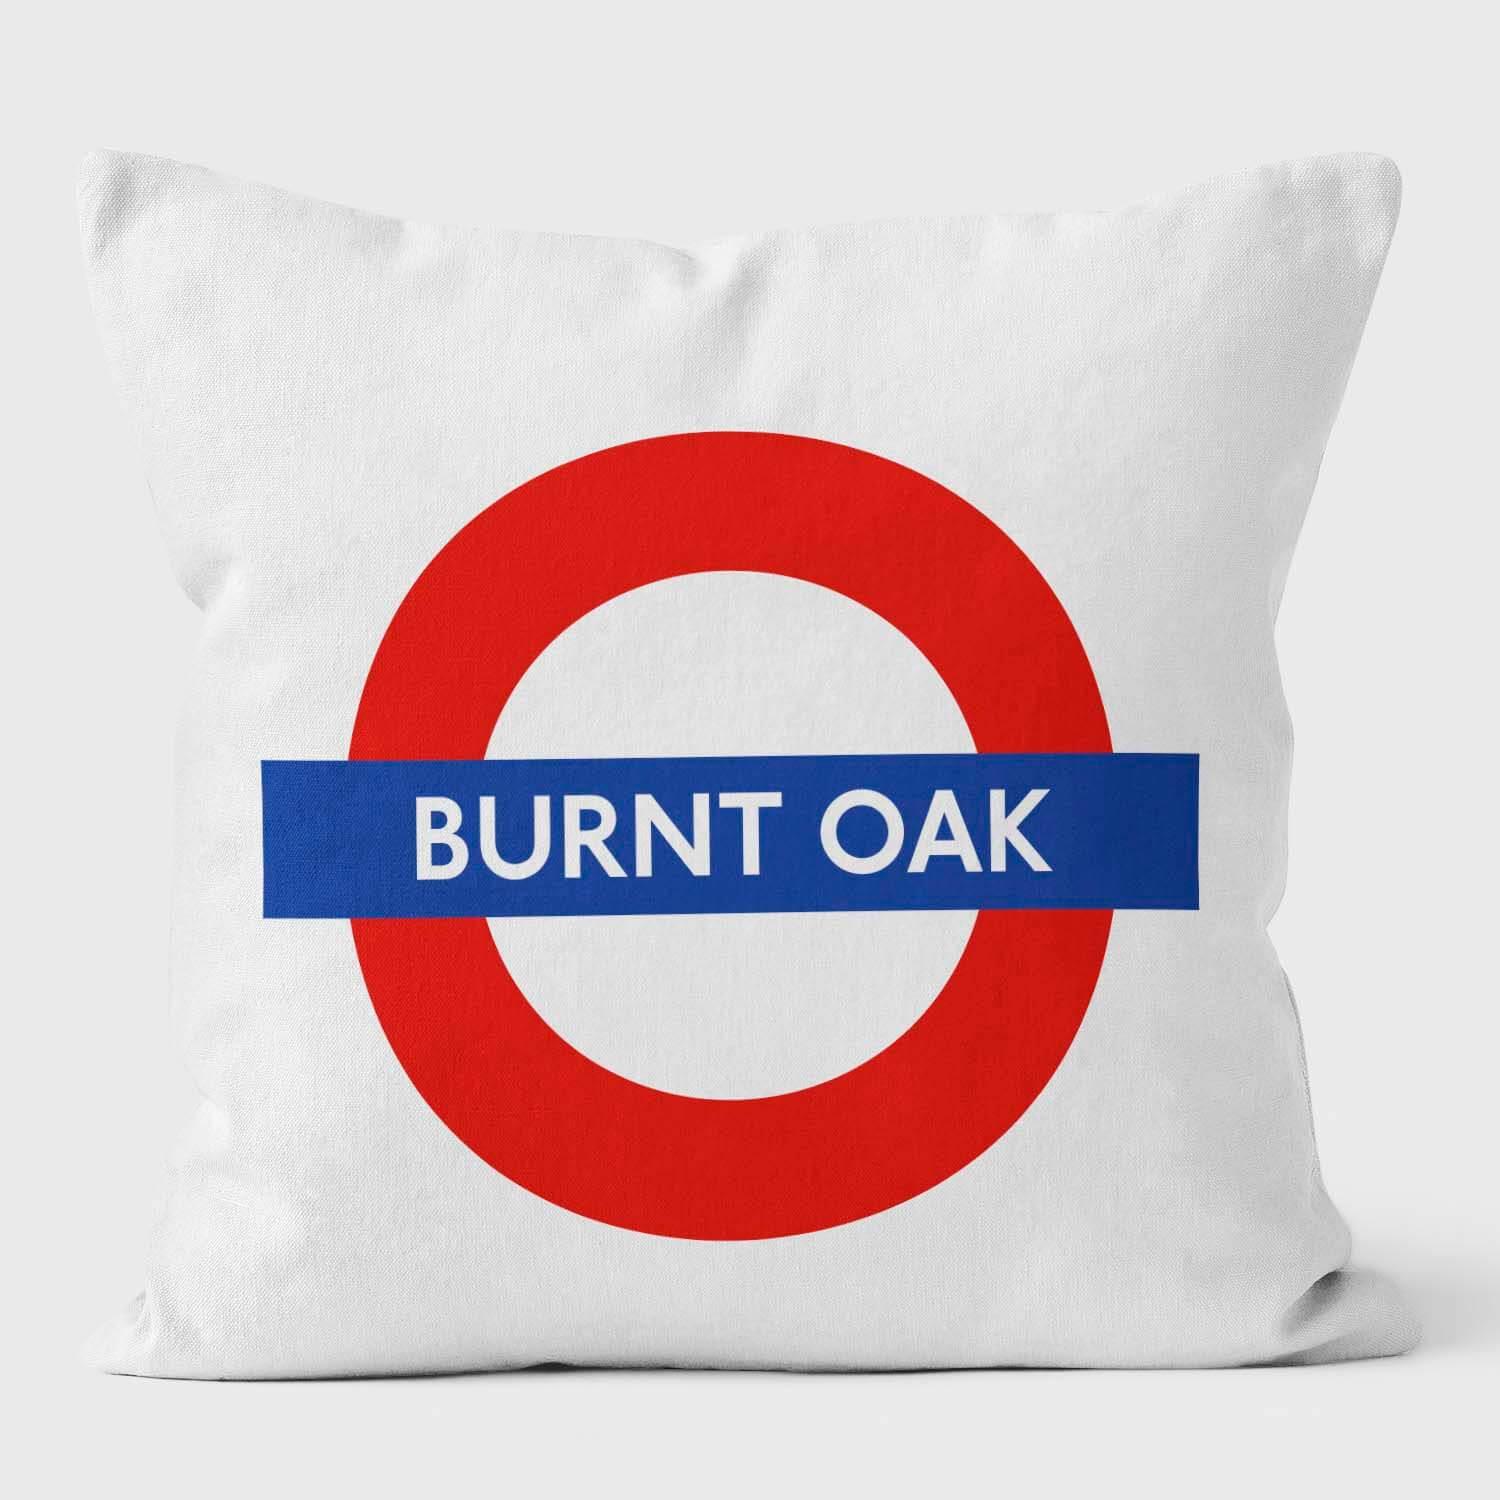 Burnt Oak London Underground Tube Station Roundel Cushion - Handmade Cushions UK - WeLoveCushions